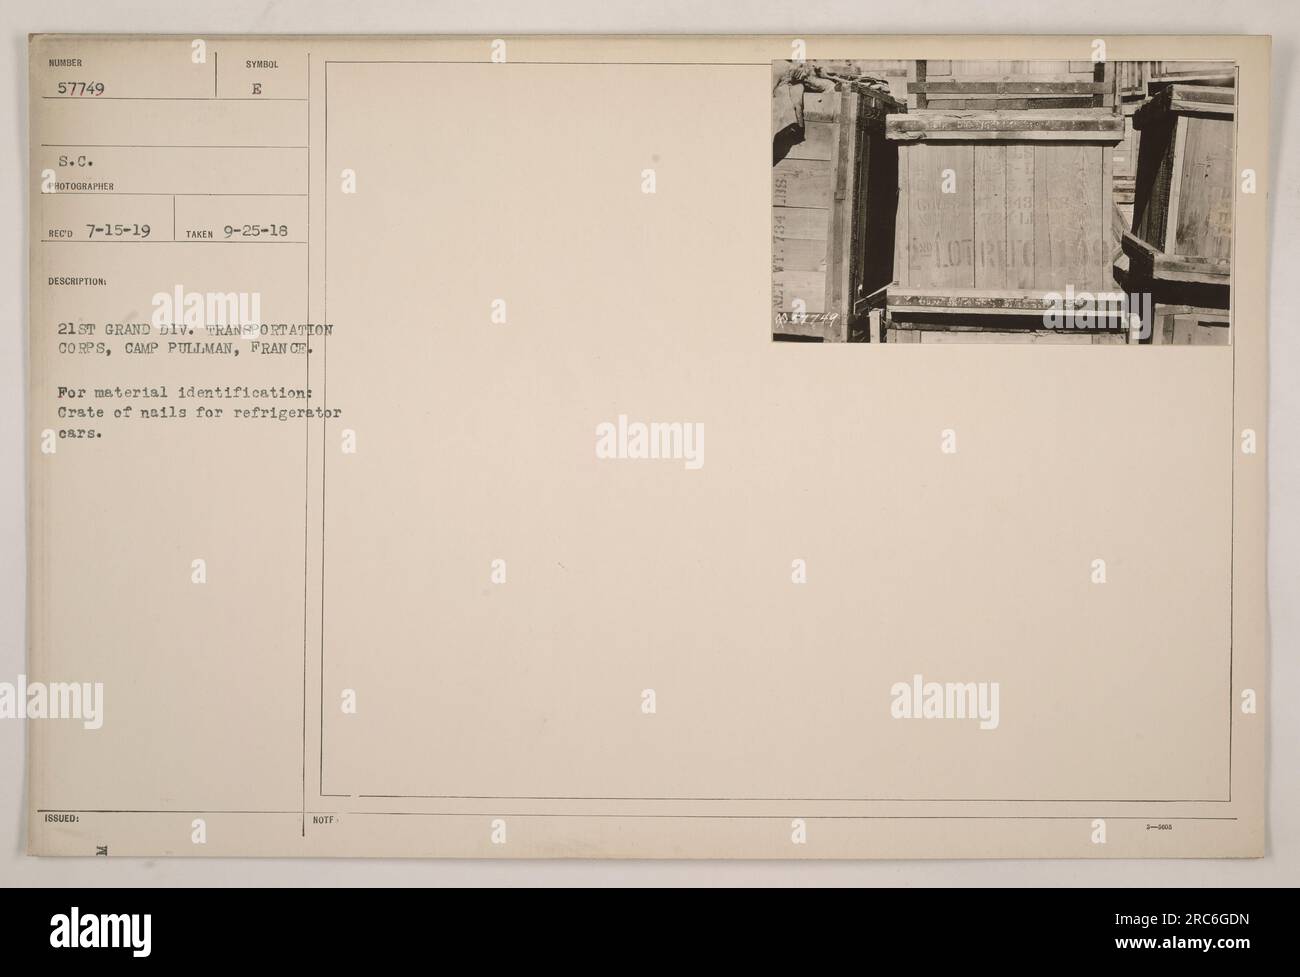 Caisse de clous pour voitures frigorifiques au Camp Pullman en France. La  caisse porte le numéro d'identification 57749 S.C. La photographie a été  prise le 25 septembre 1918 par le photographe de